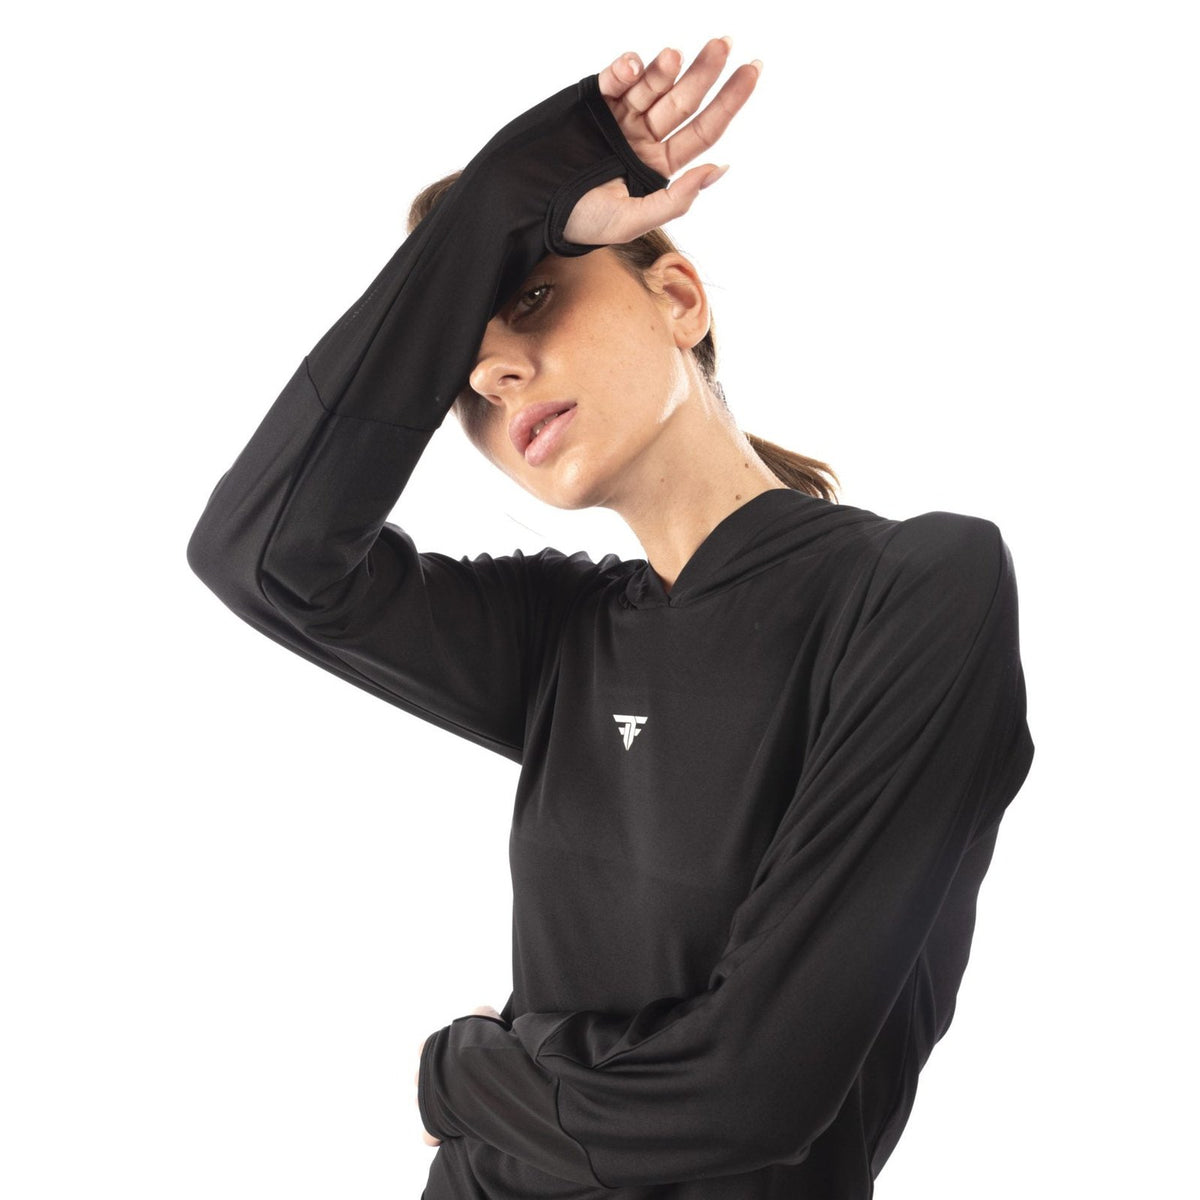 Long Sleeve Mesh Sweatshirt In Black - Sporty Pro